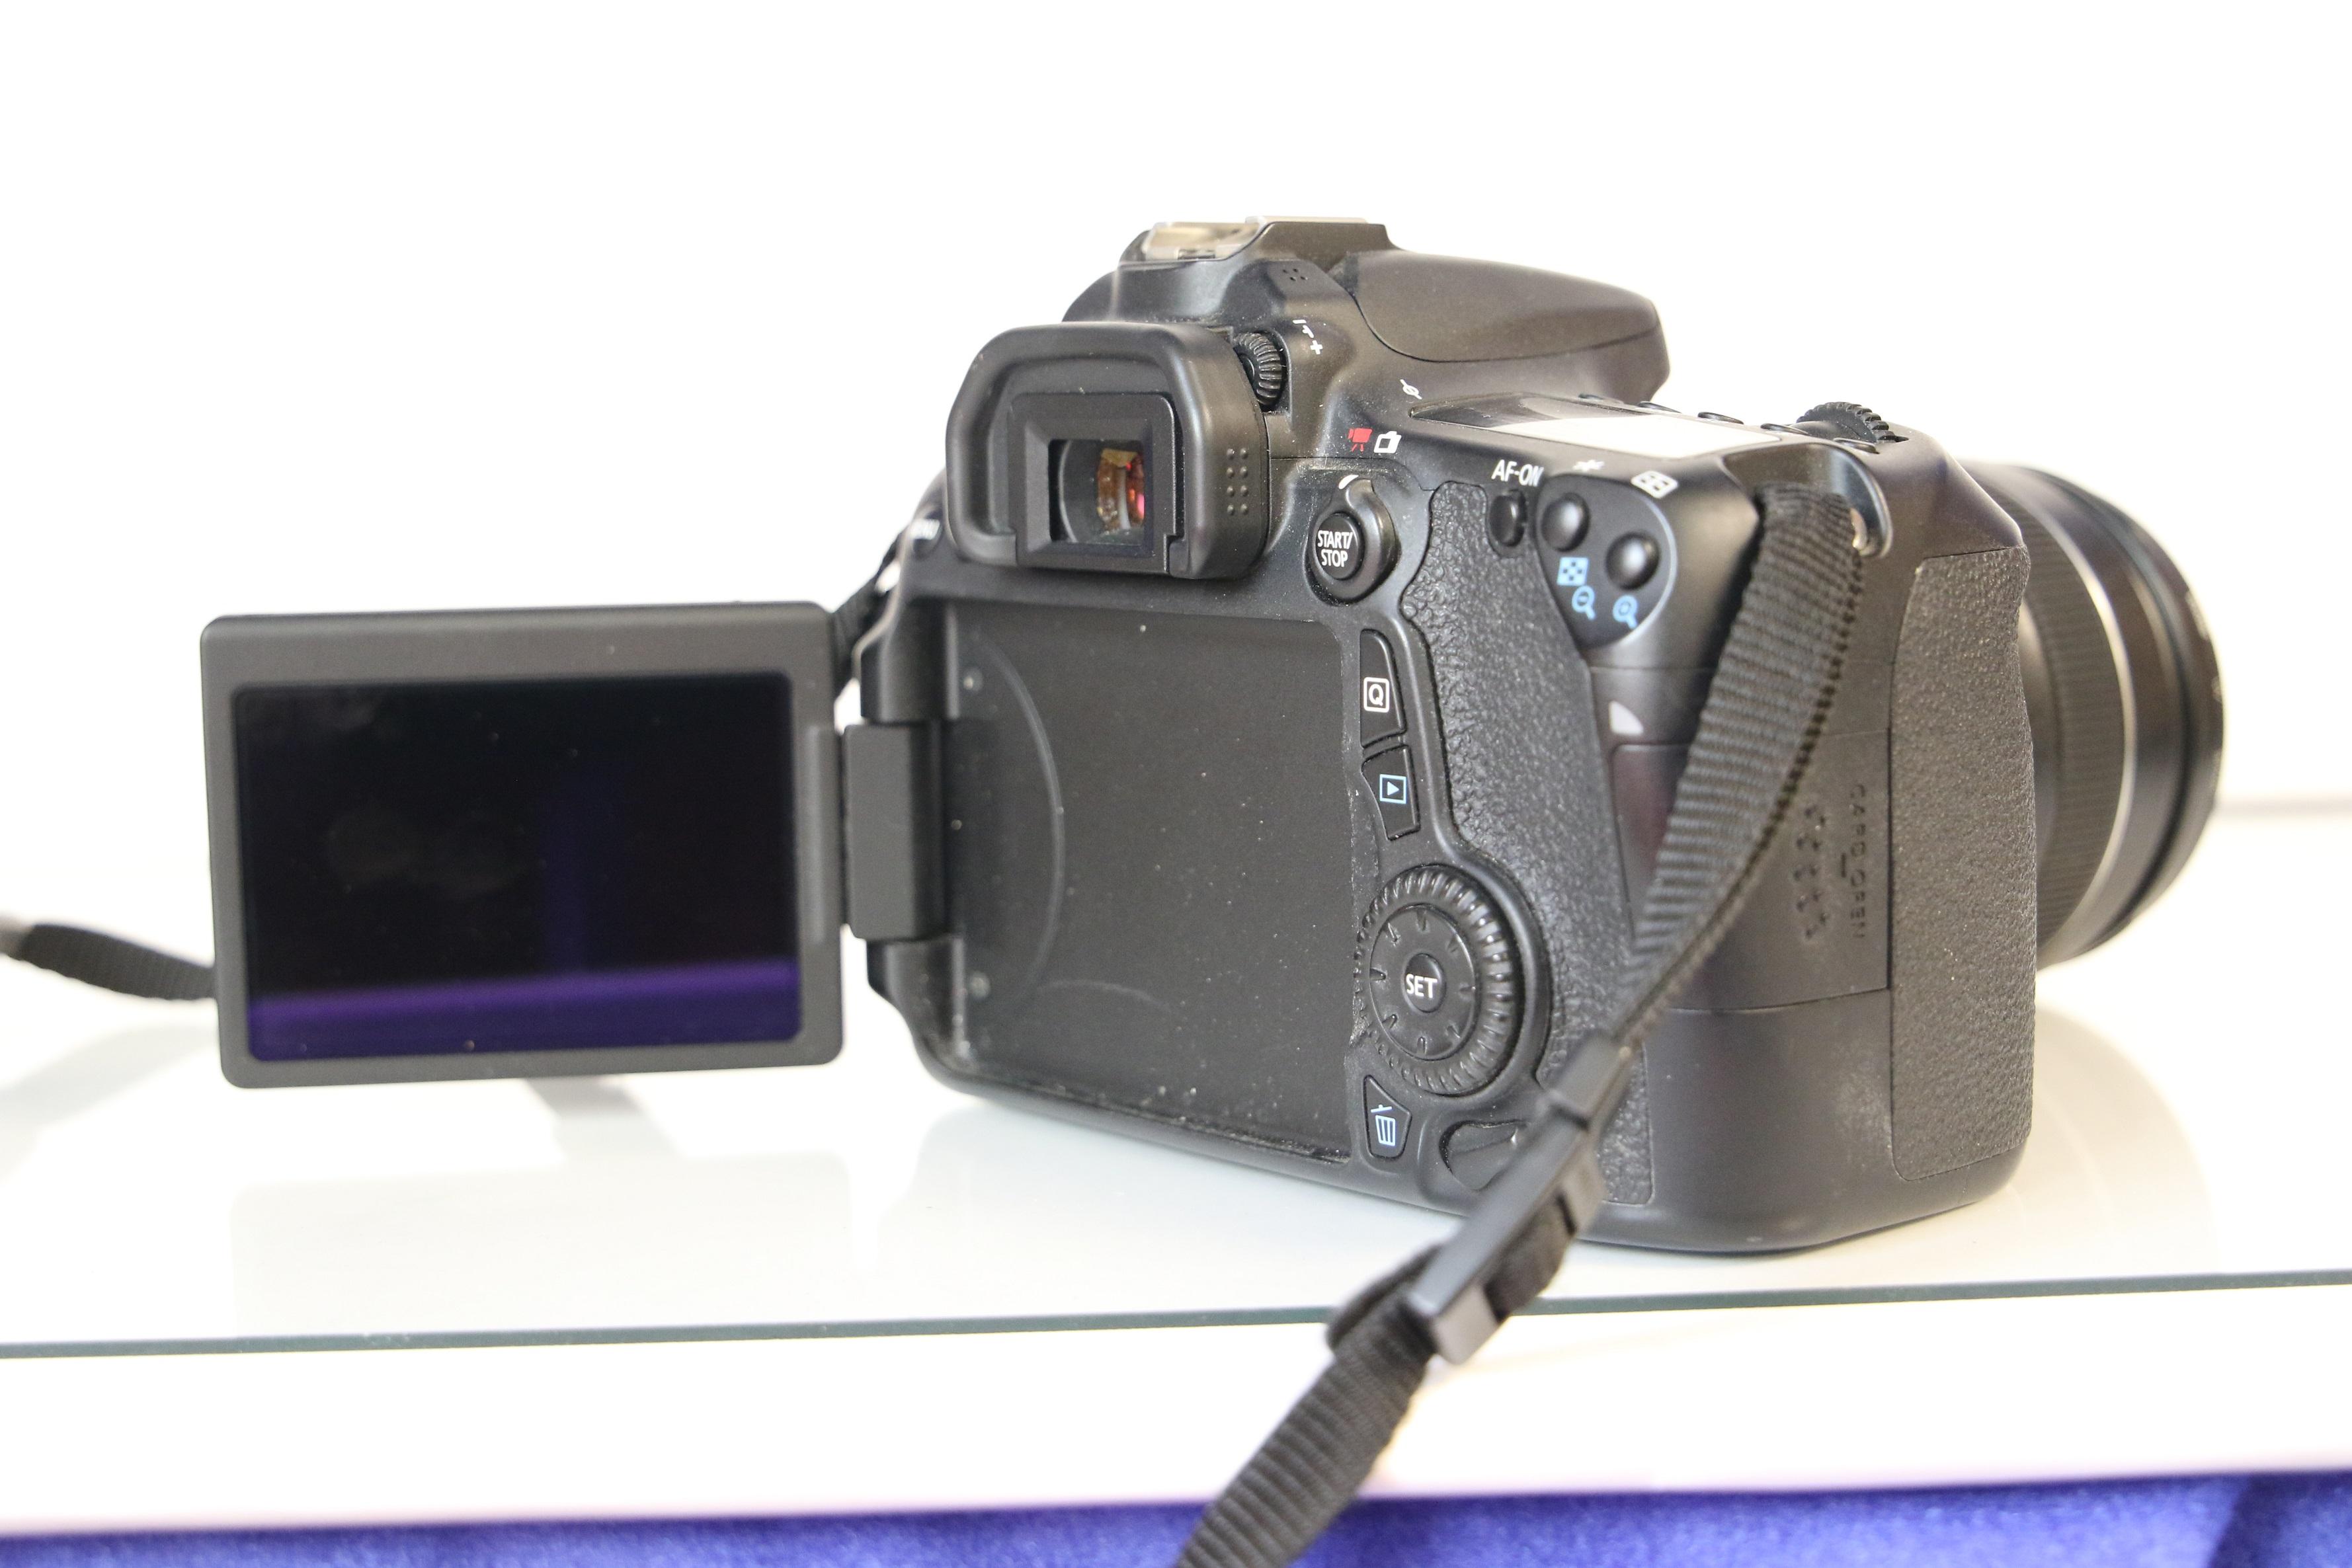 Canon 70D Camera/Lens Kit